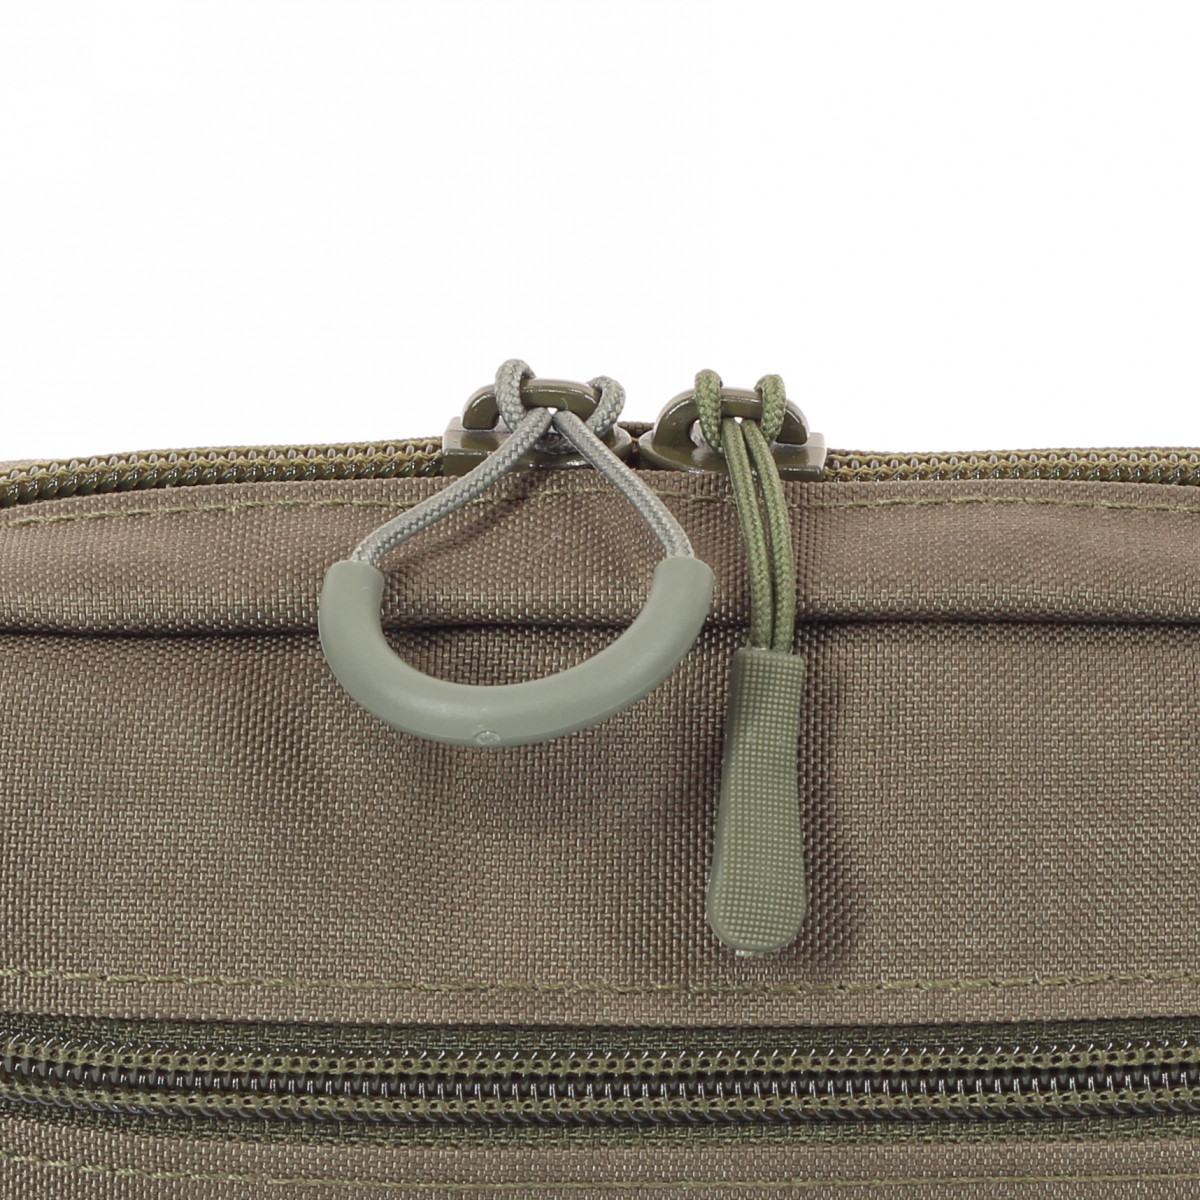 Hüfttasche subcompact Oliv – Unterschiedliche Ziehhilfen für einen schnellen Zugriff in Notsituationen